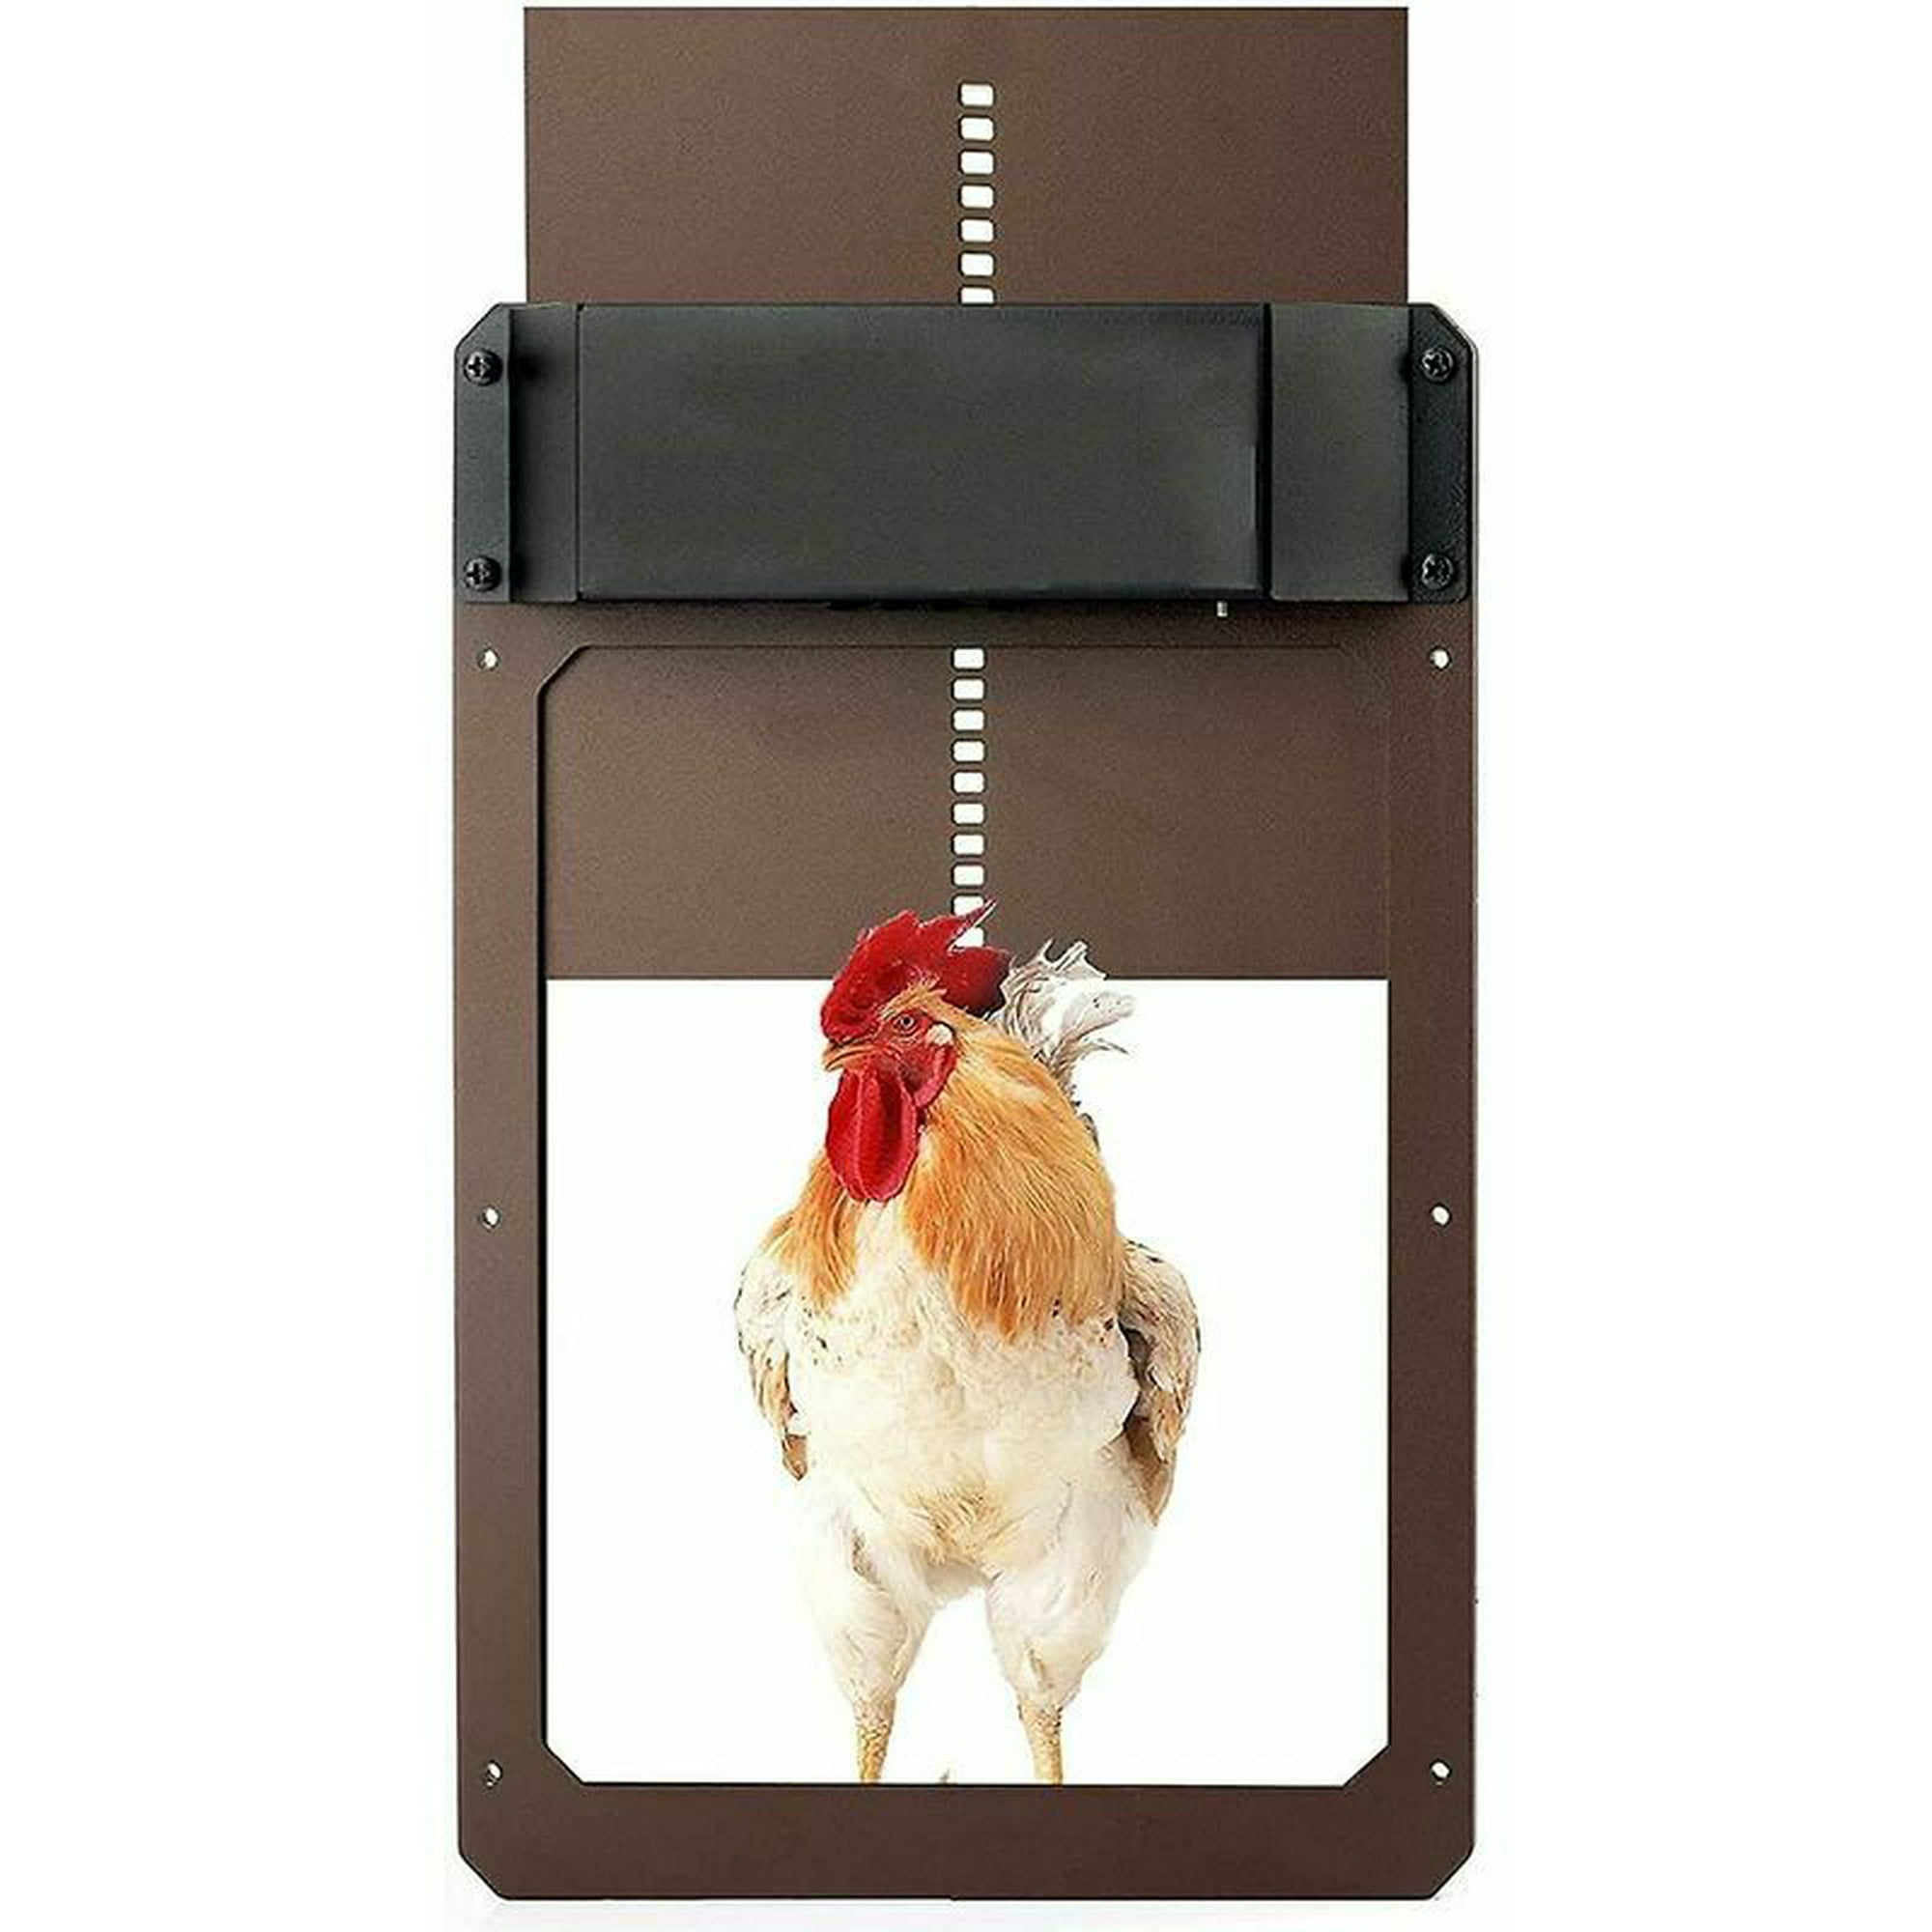 Puerta de gallinero automática, kit de apertura de puerta de pollo con  sensor de luz y